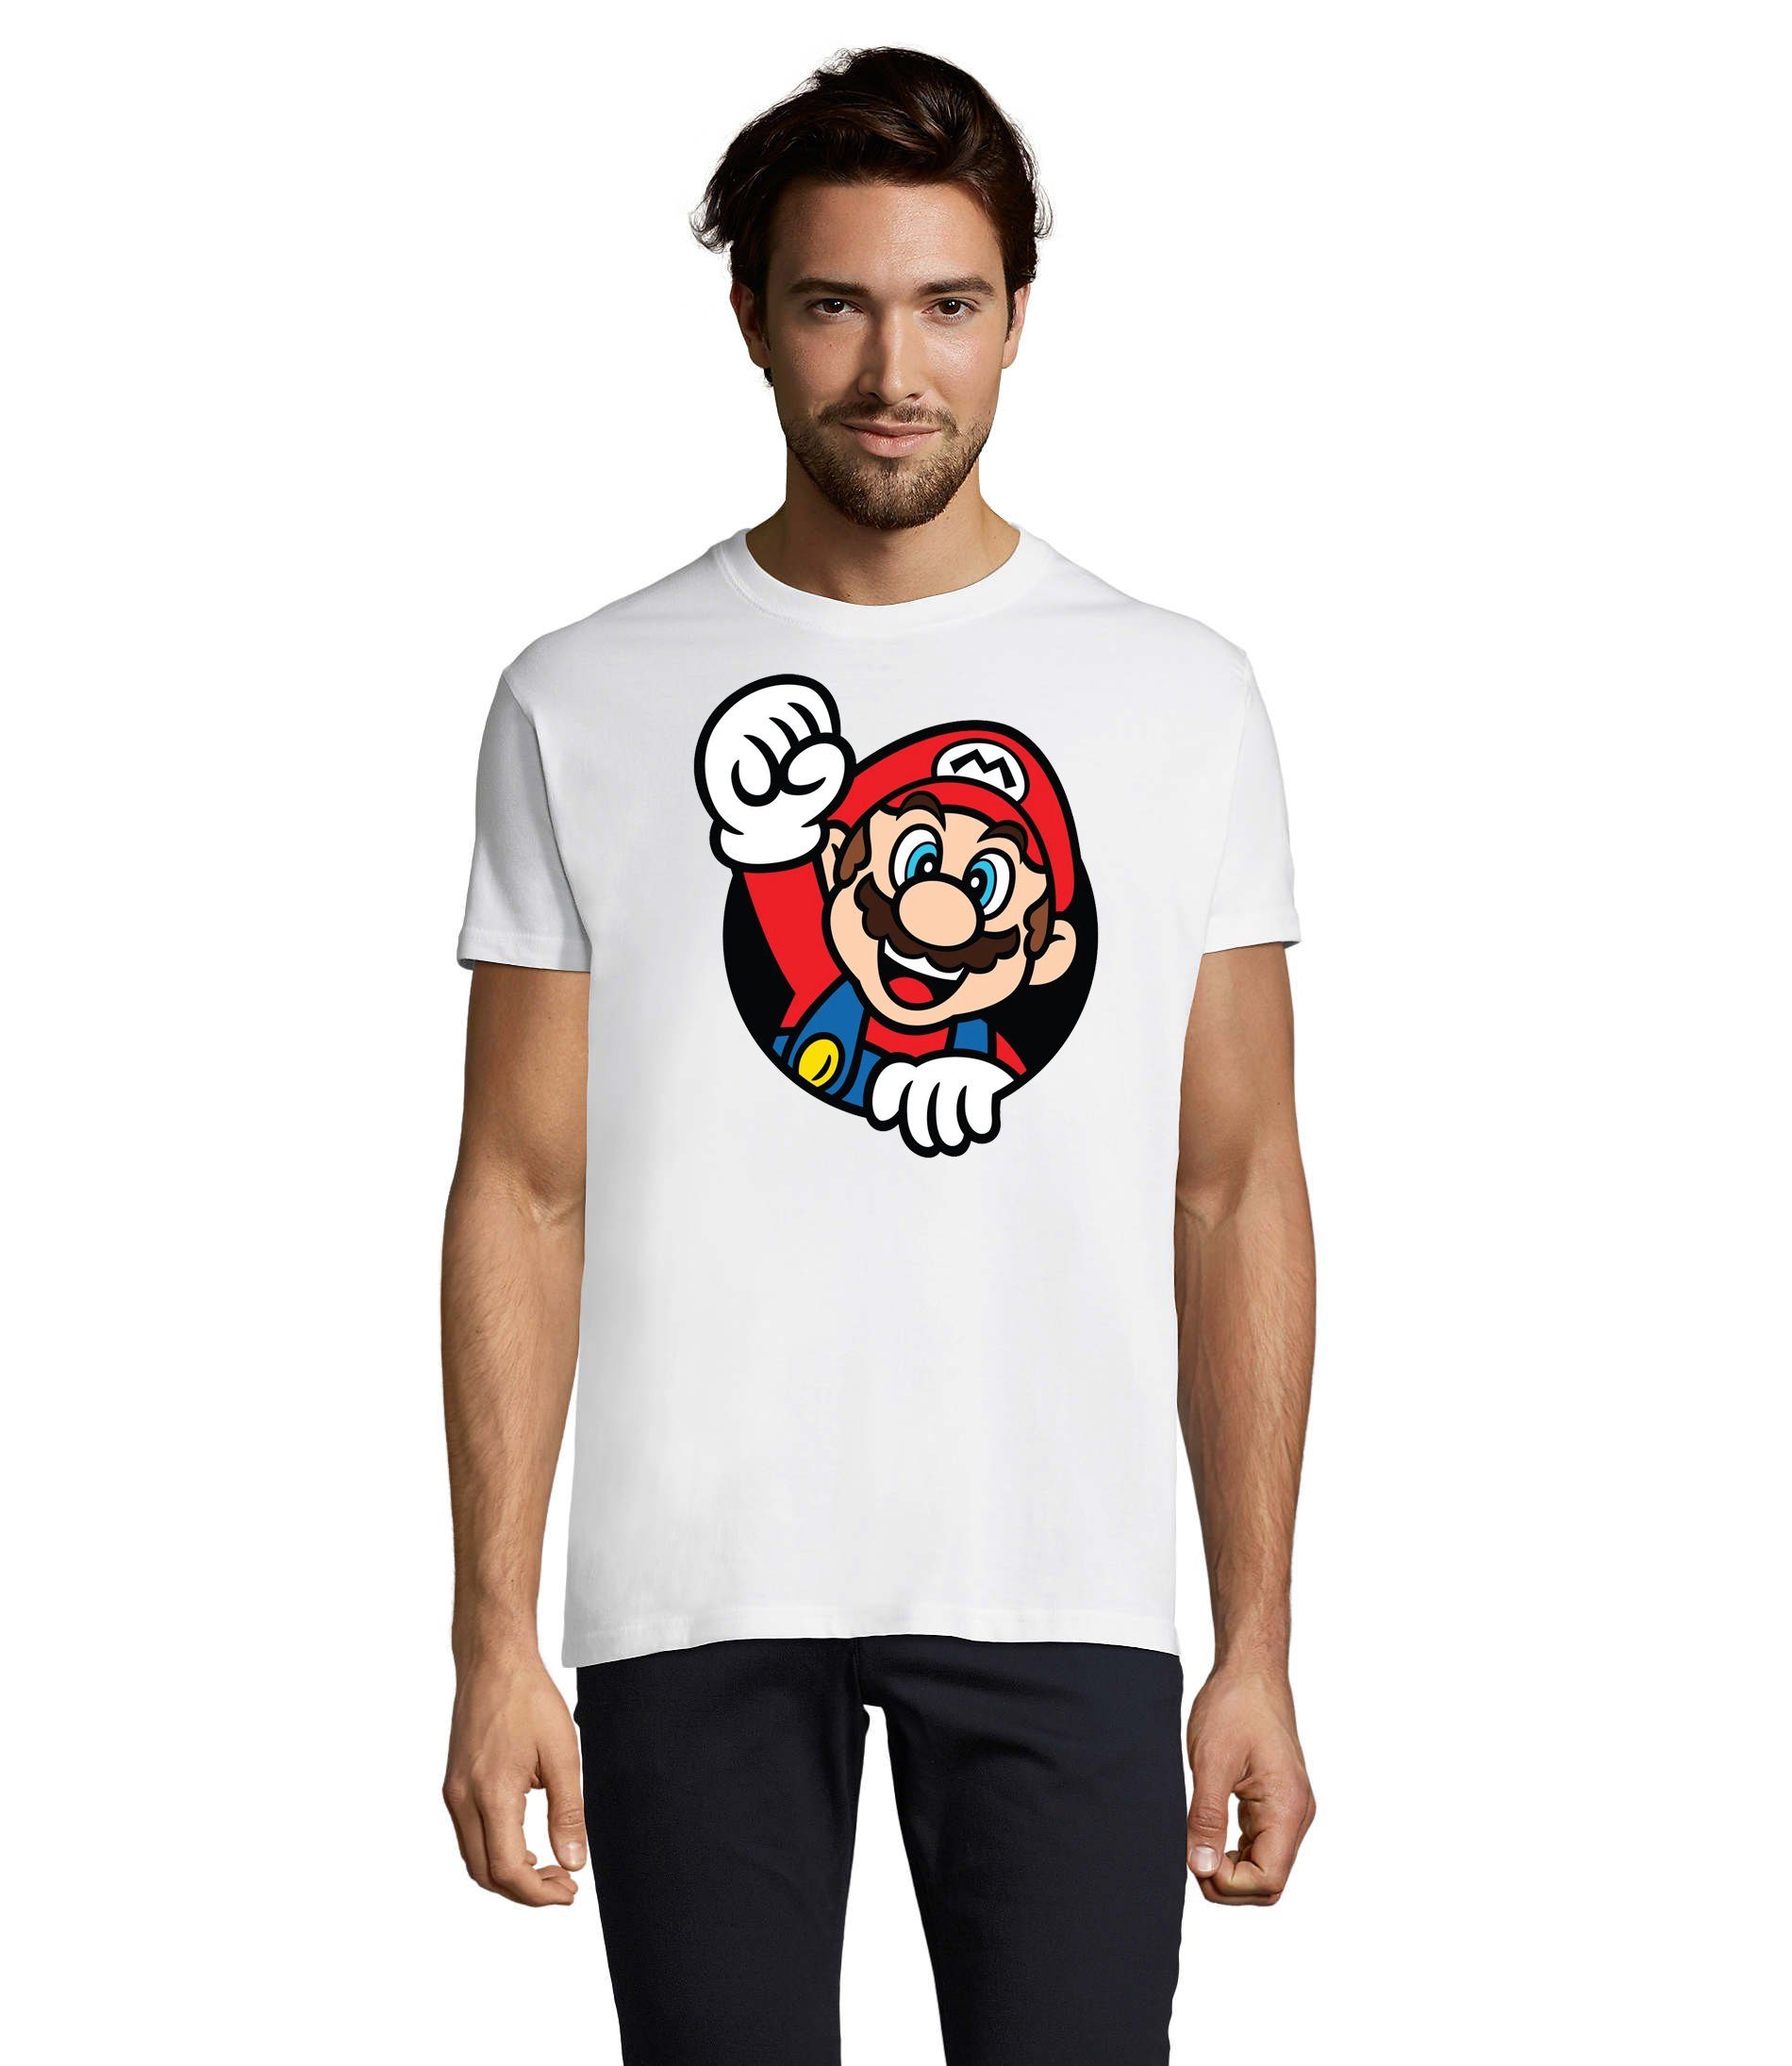 Blondie & Spiel Weiss Nintendo Nerd Brownie Mario Konsole Herren Super Gaming T-Shirt Faust